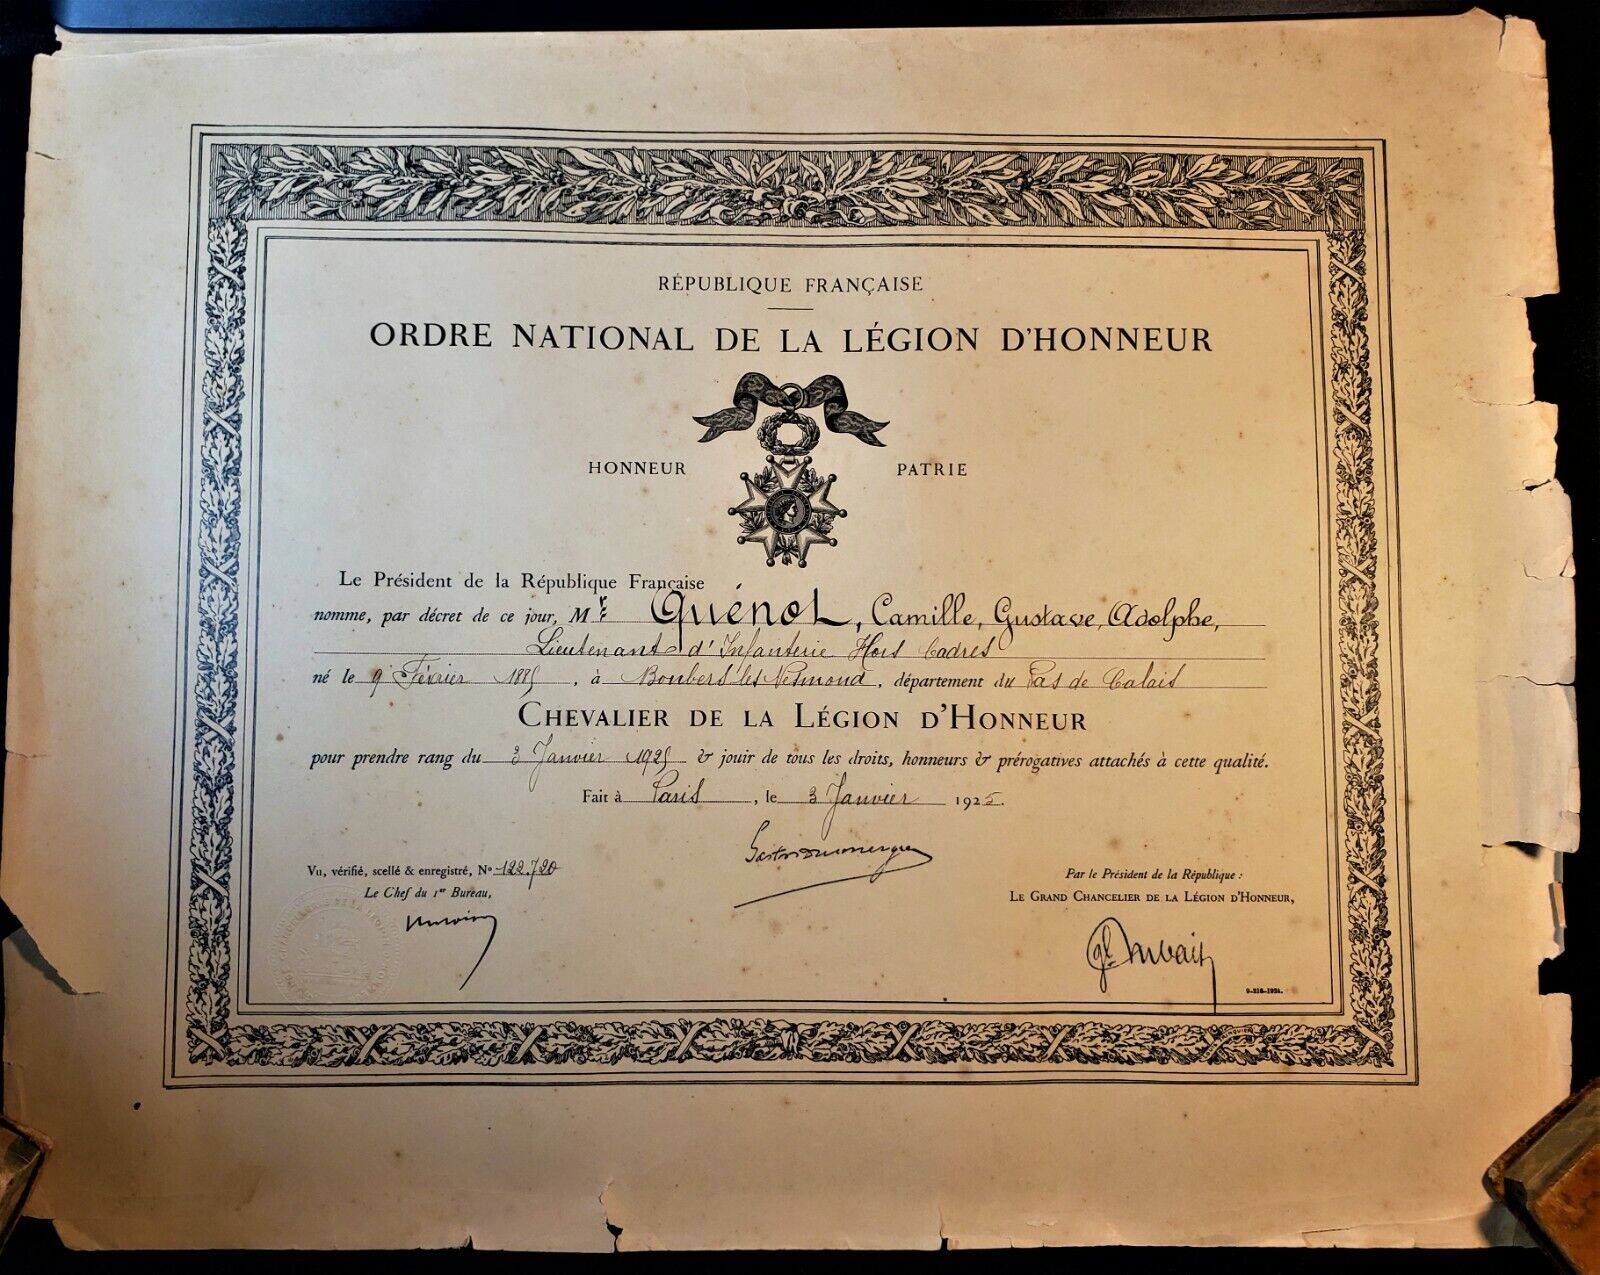 PRESIDENT OF FRANCE GASTON DOUMERGUE SIGNED DIPLOMA LEGION OF HONOR ORDER - 1925